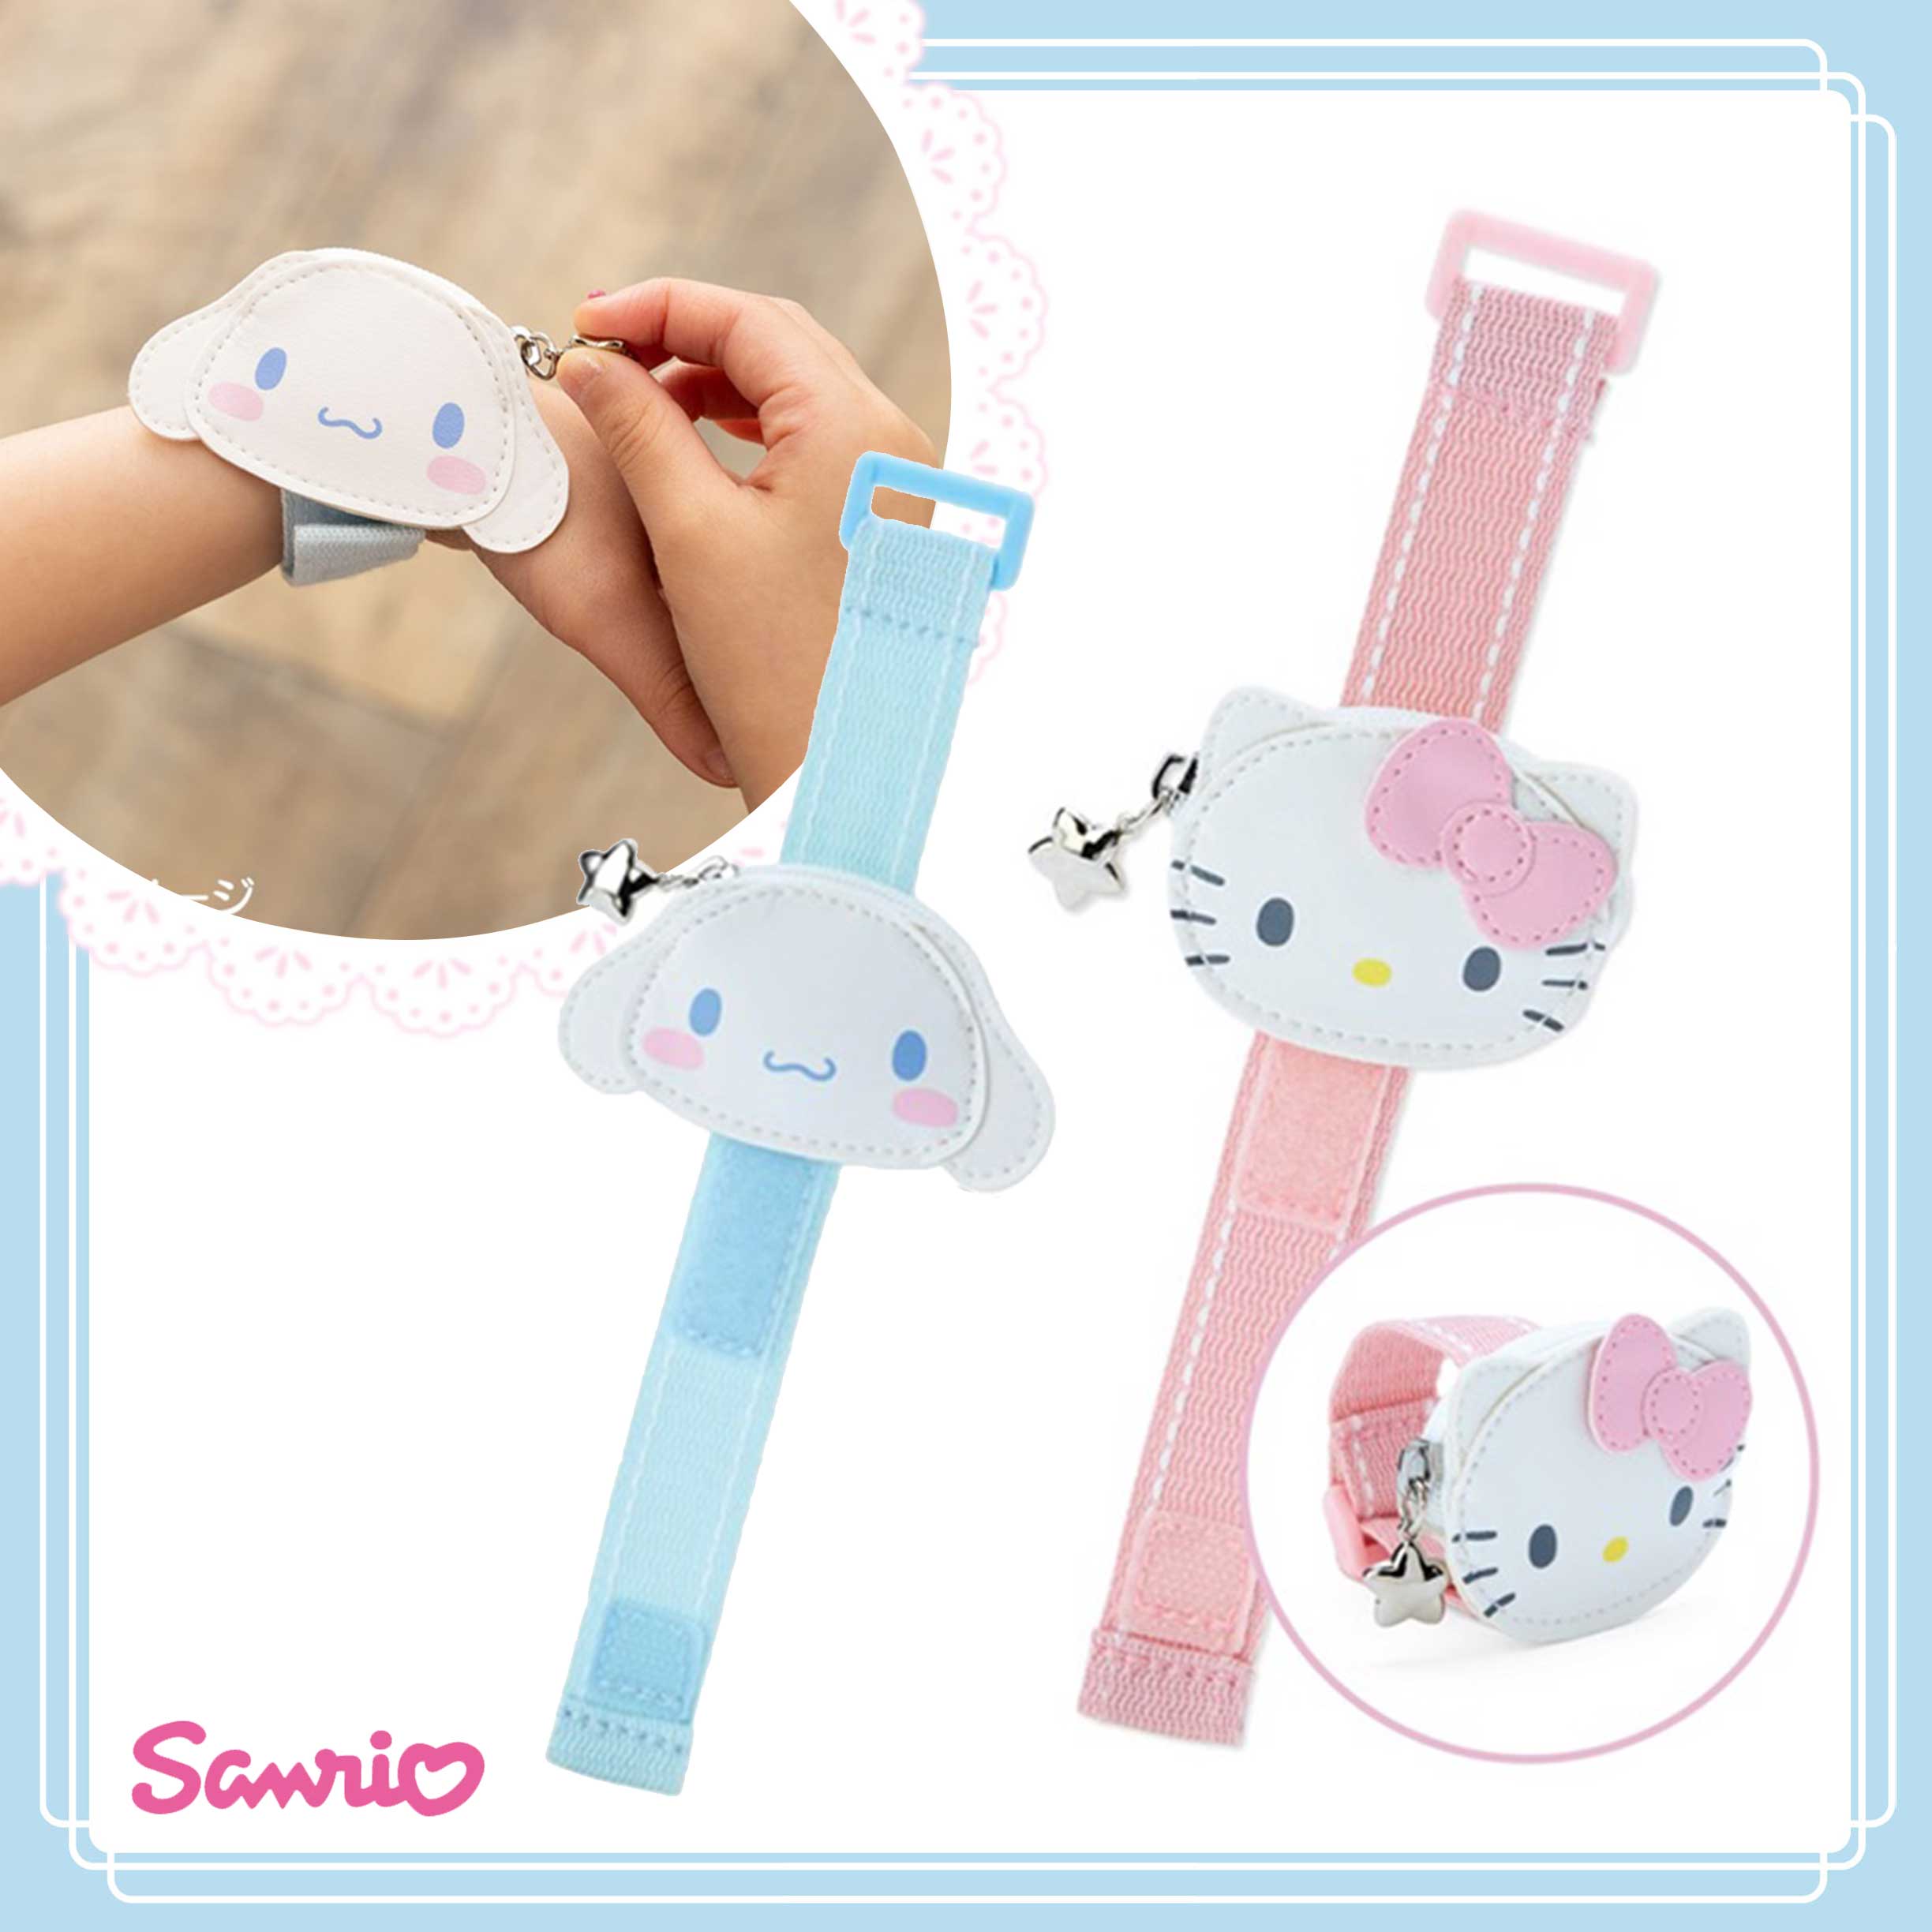 兒童皮質造型手腕零錢包-三麗鷗 Sanrio 日本進口正版授權